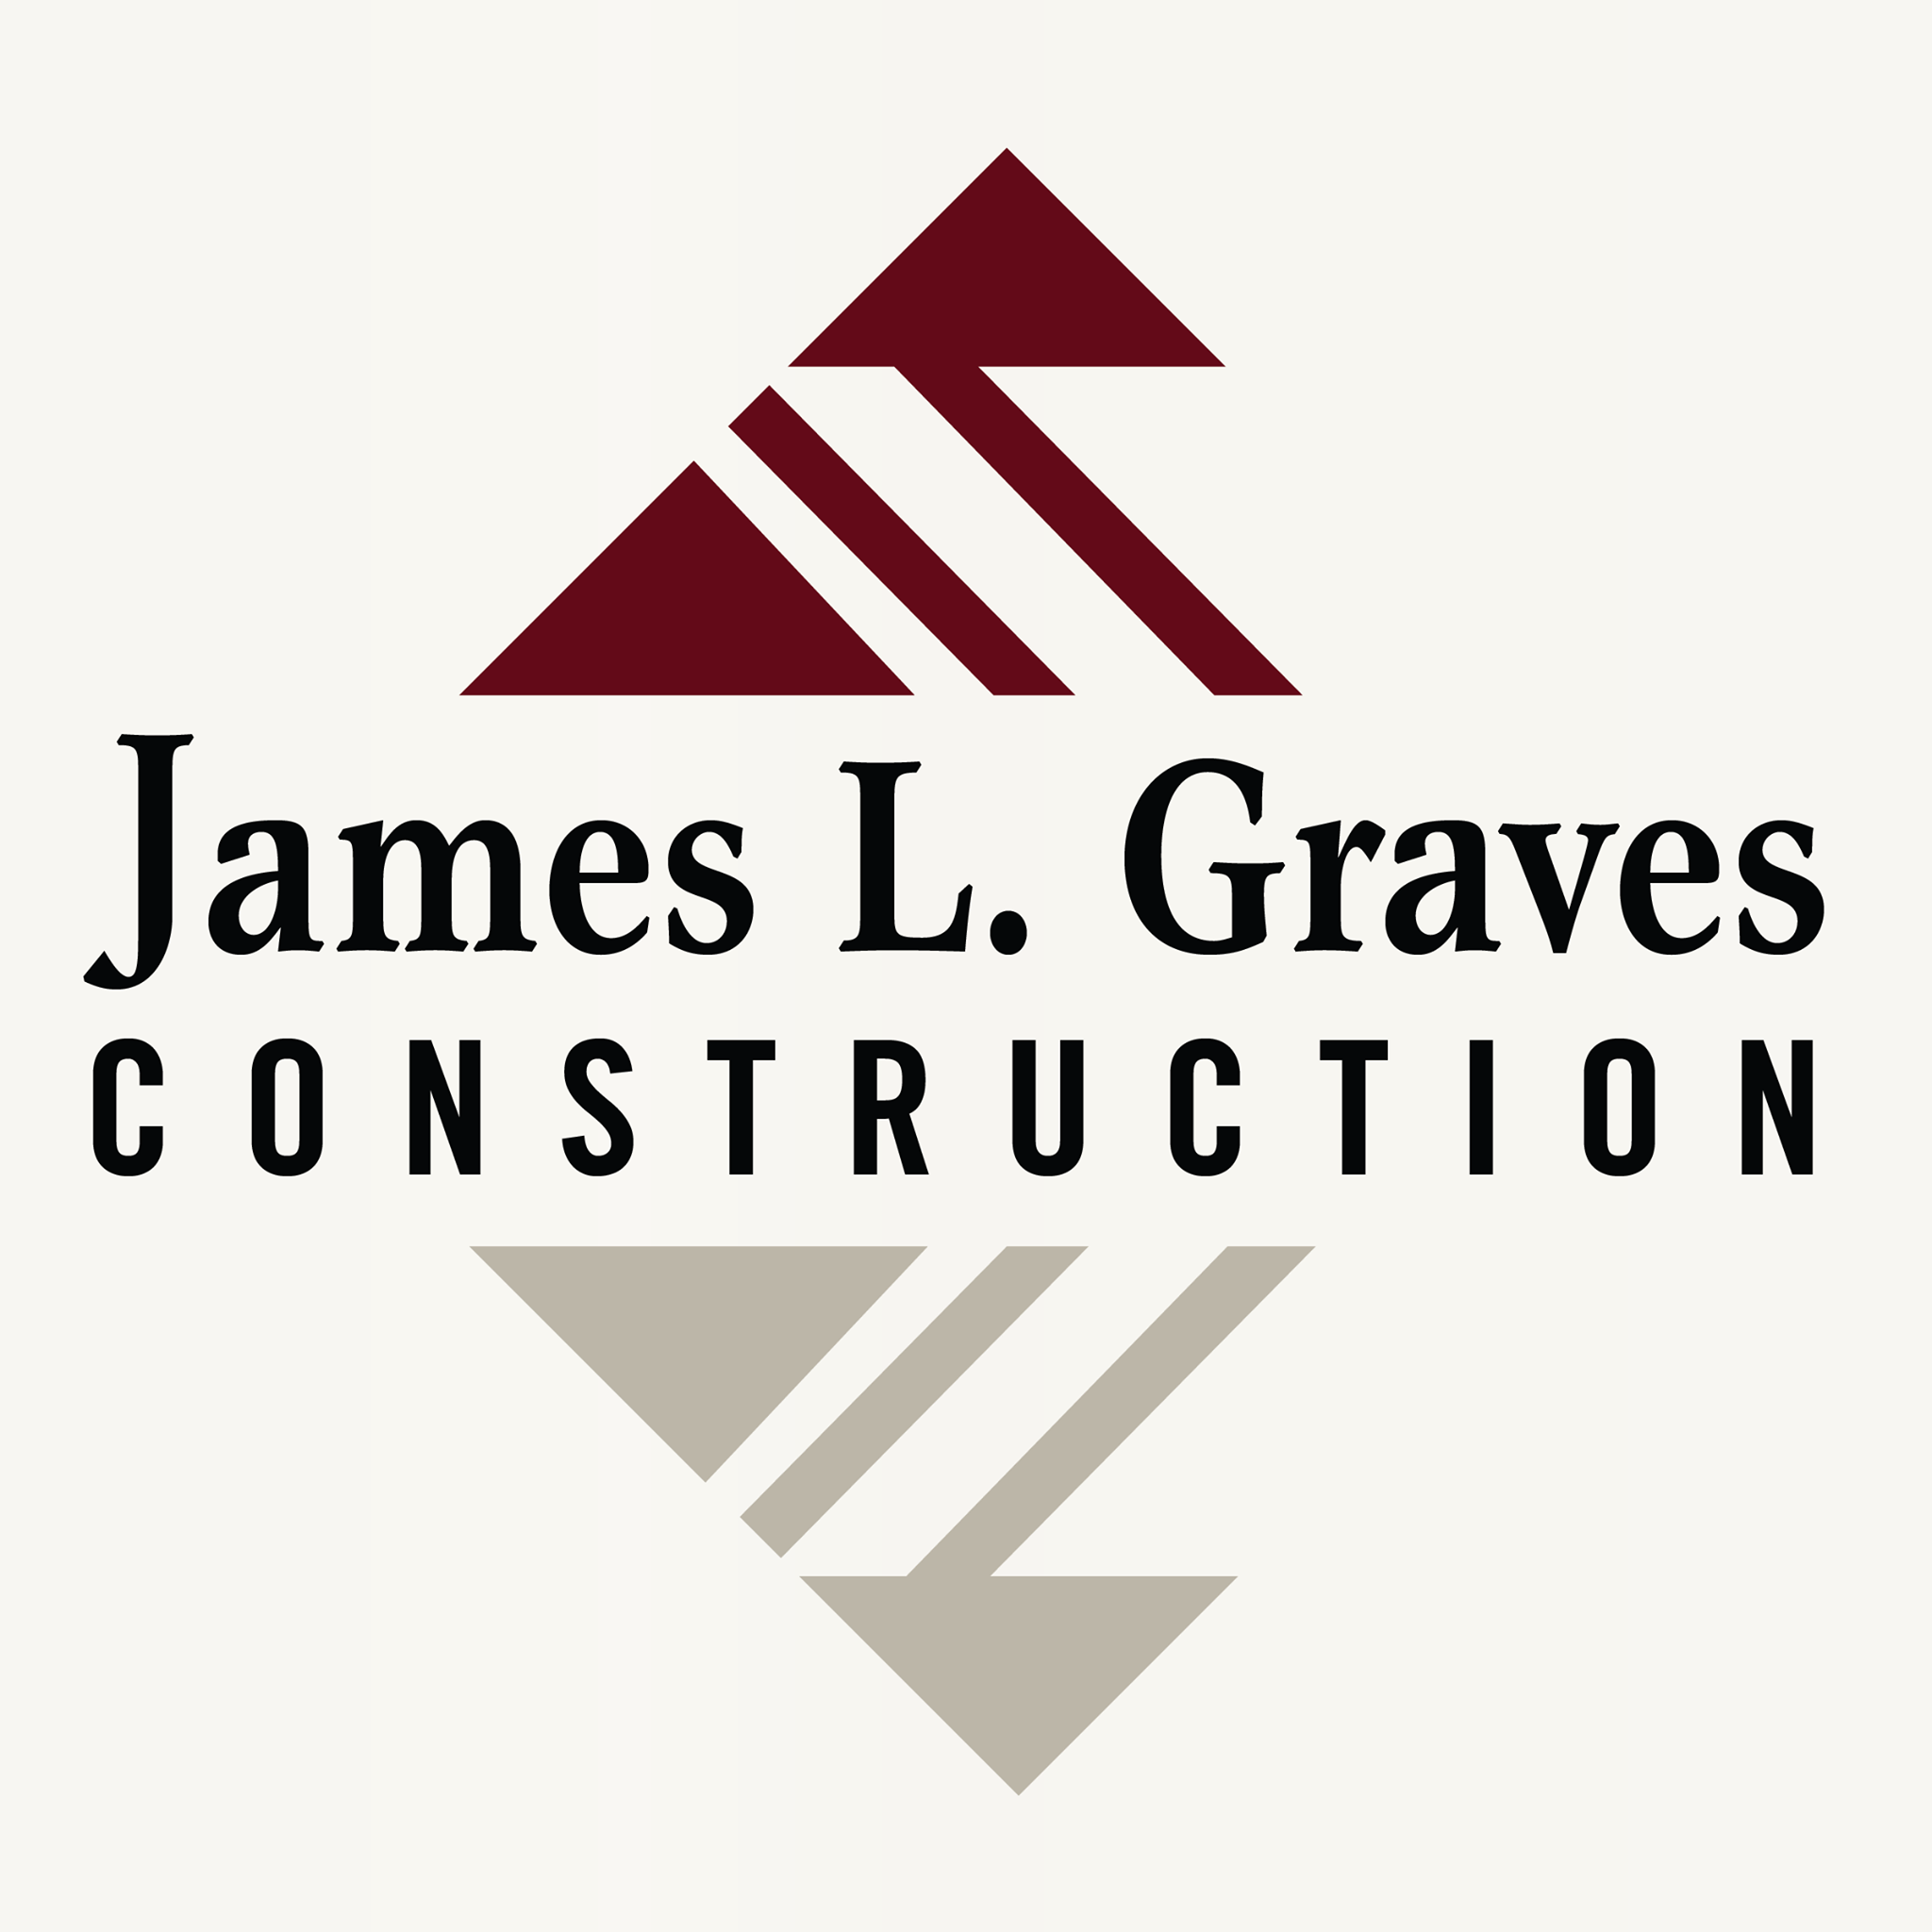 James L. Graves Construction logo